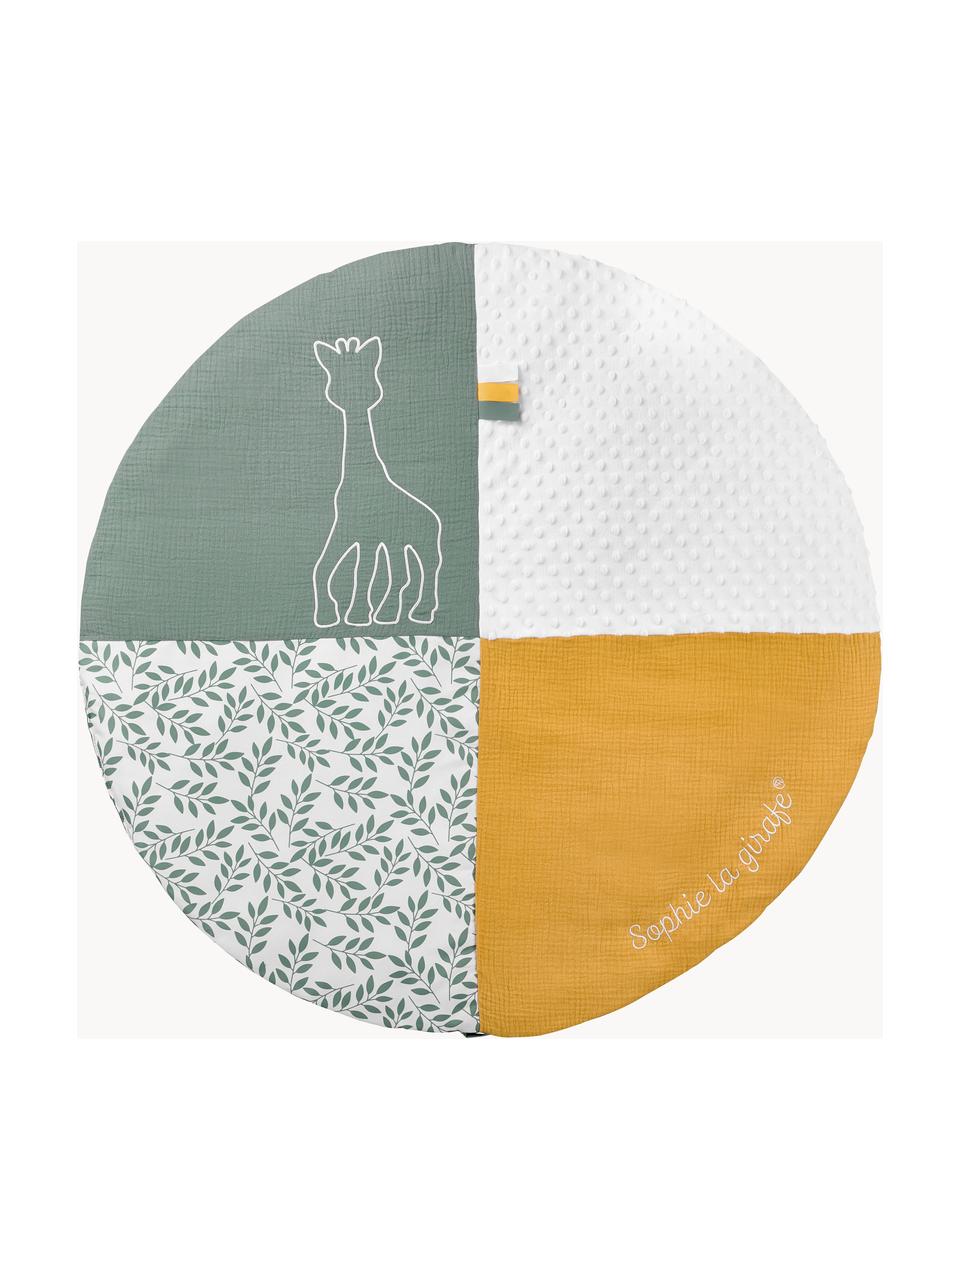 Podložka s oblúkom na hranie Sophie la girafe, 2 diely, 90 % polyester, 10 % bavlna, Biela, žltá, šalviová, Ø 90 x V 53 cm